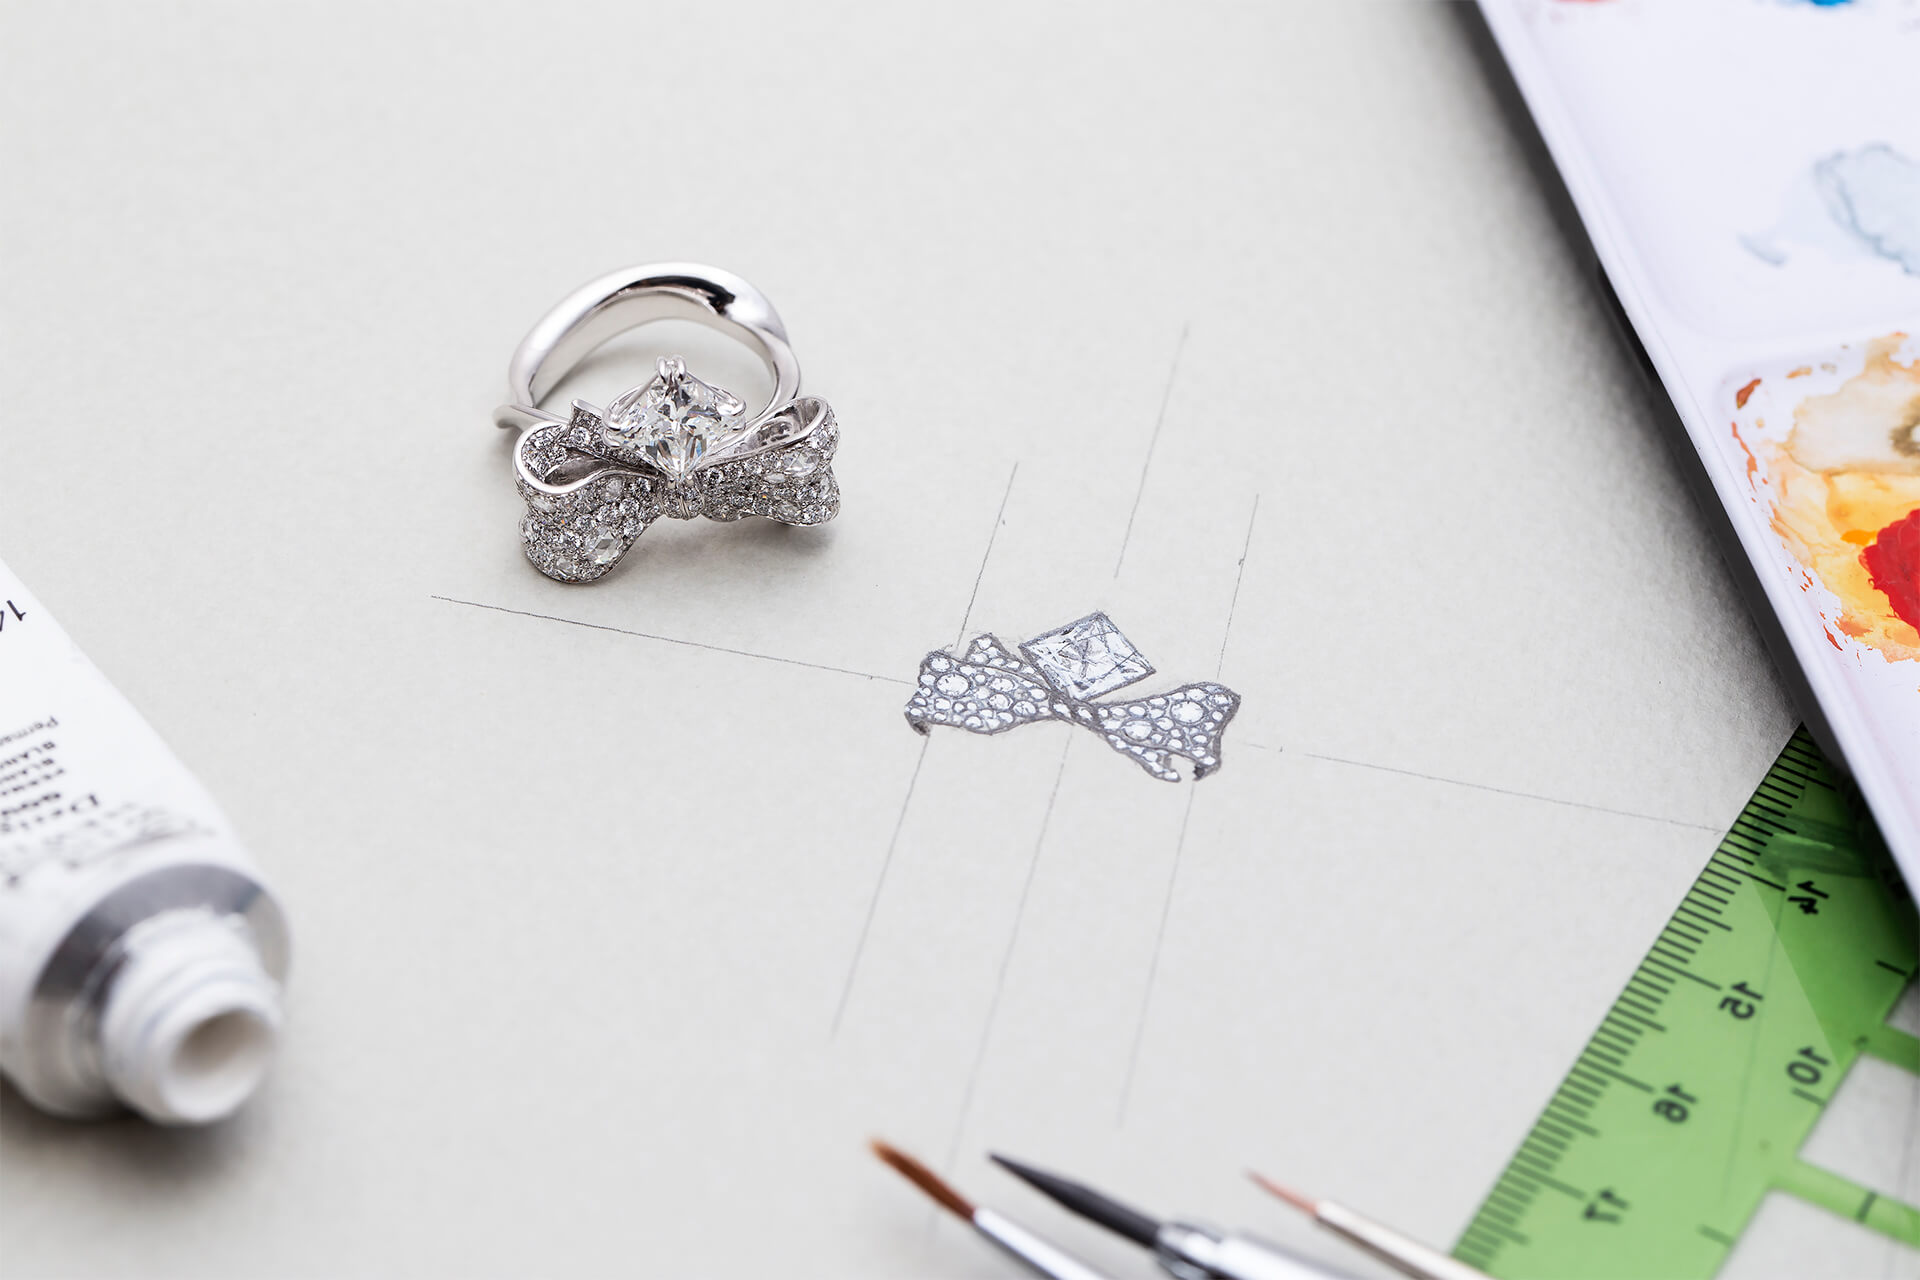 此珠寶設計以「彼此的禮物」為概念發想，以蝴蝶結和緞帶造型作為週年結婚對戒主軸